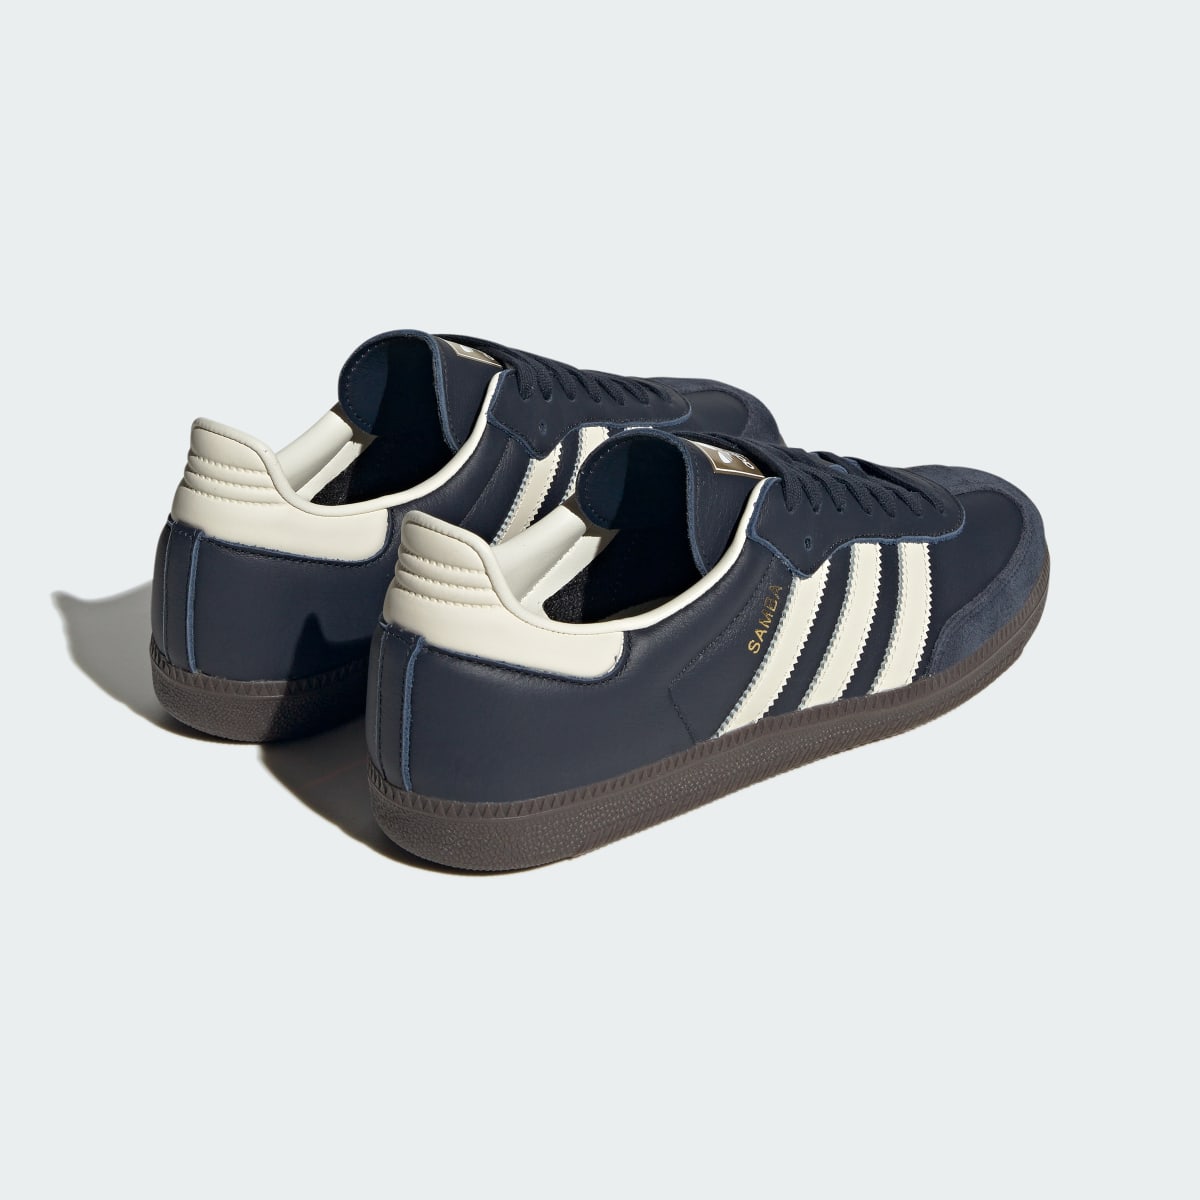 Adidas Samba OG Shoes. 10